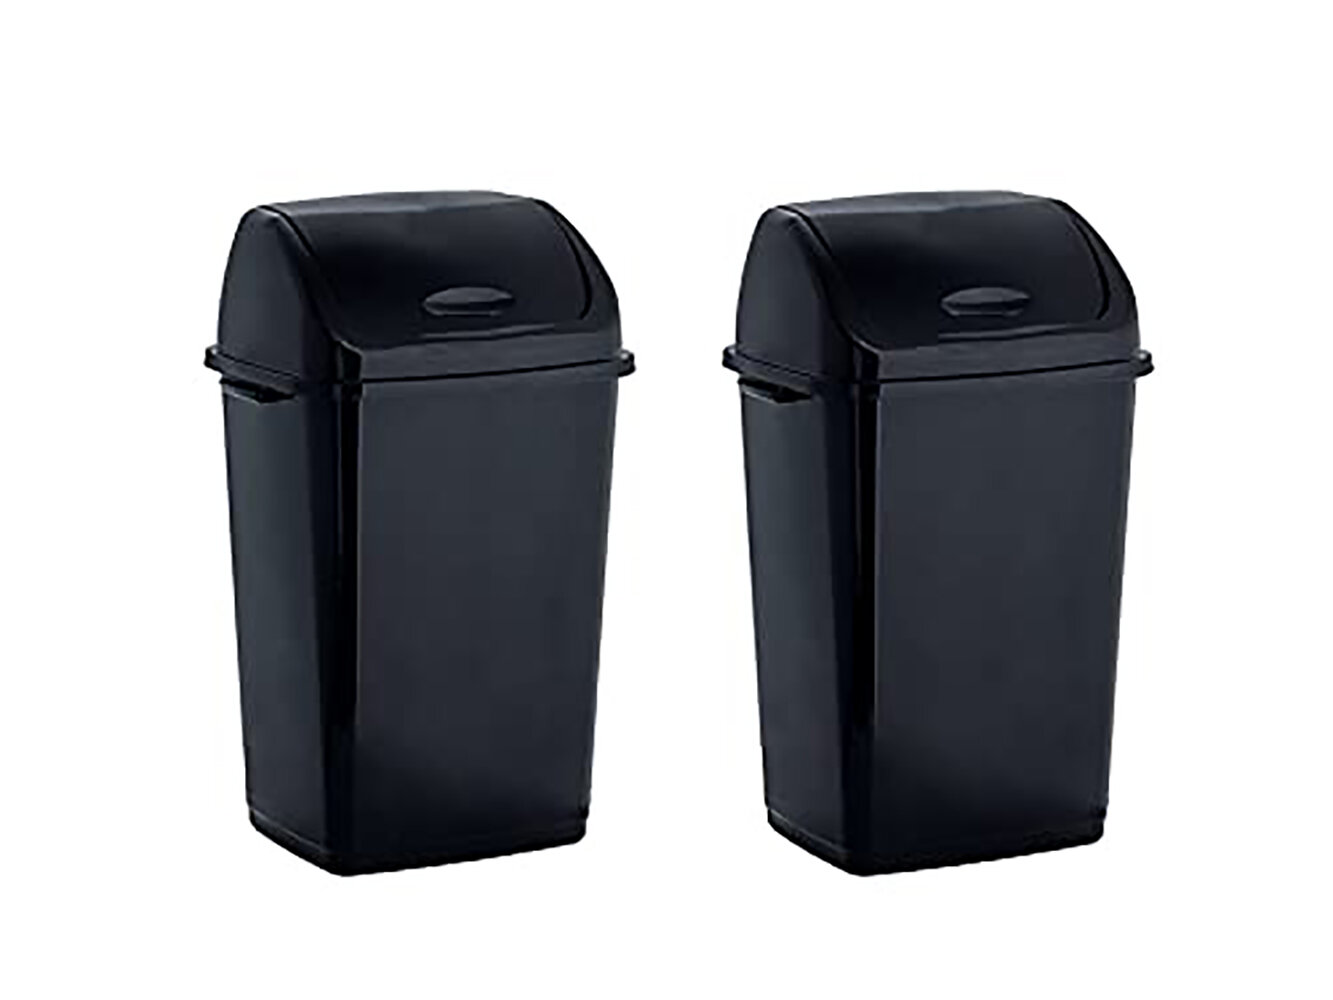 Sterilite 13 Gallon Trash Can, Plastic Swing Top Kitchen Trash Can, Black 